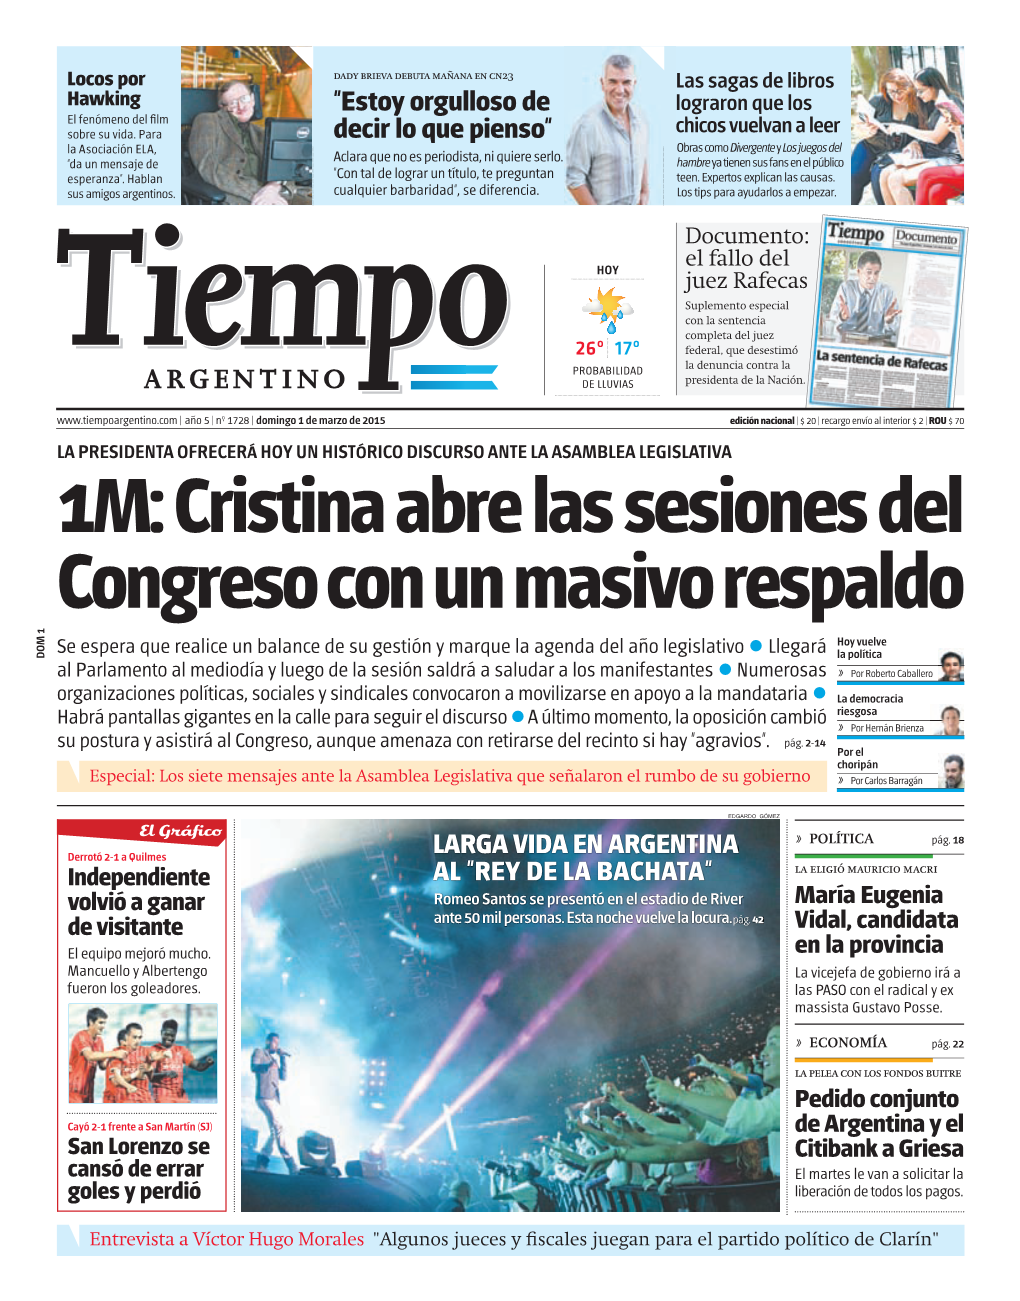 1M: Cristina Abre Las Sesiones Del Congreso Con Un Masivo Respaldo